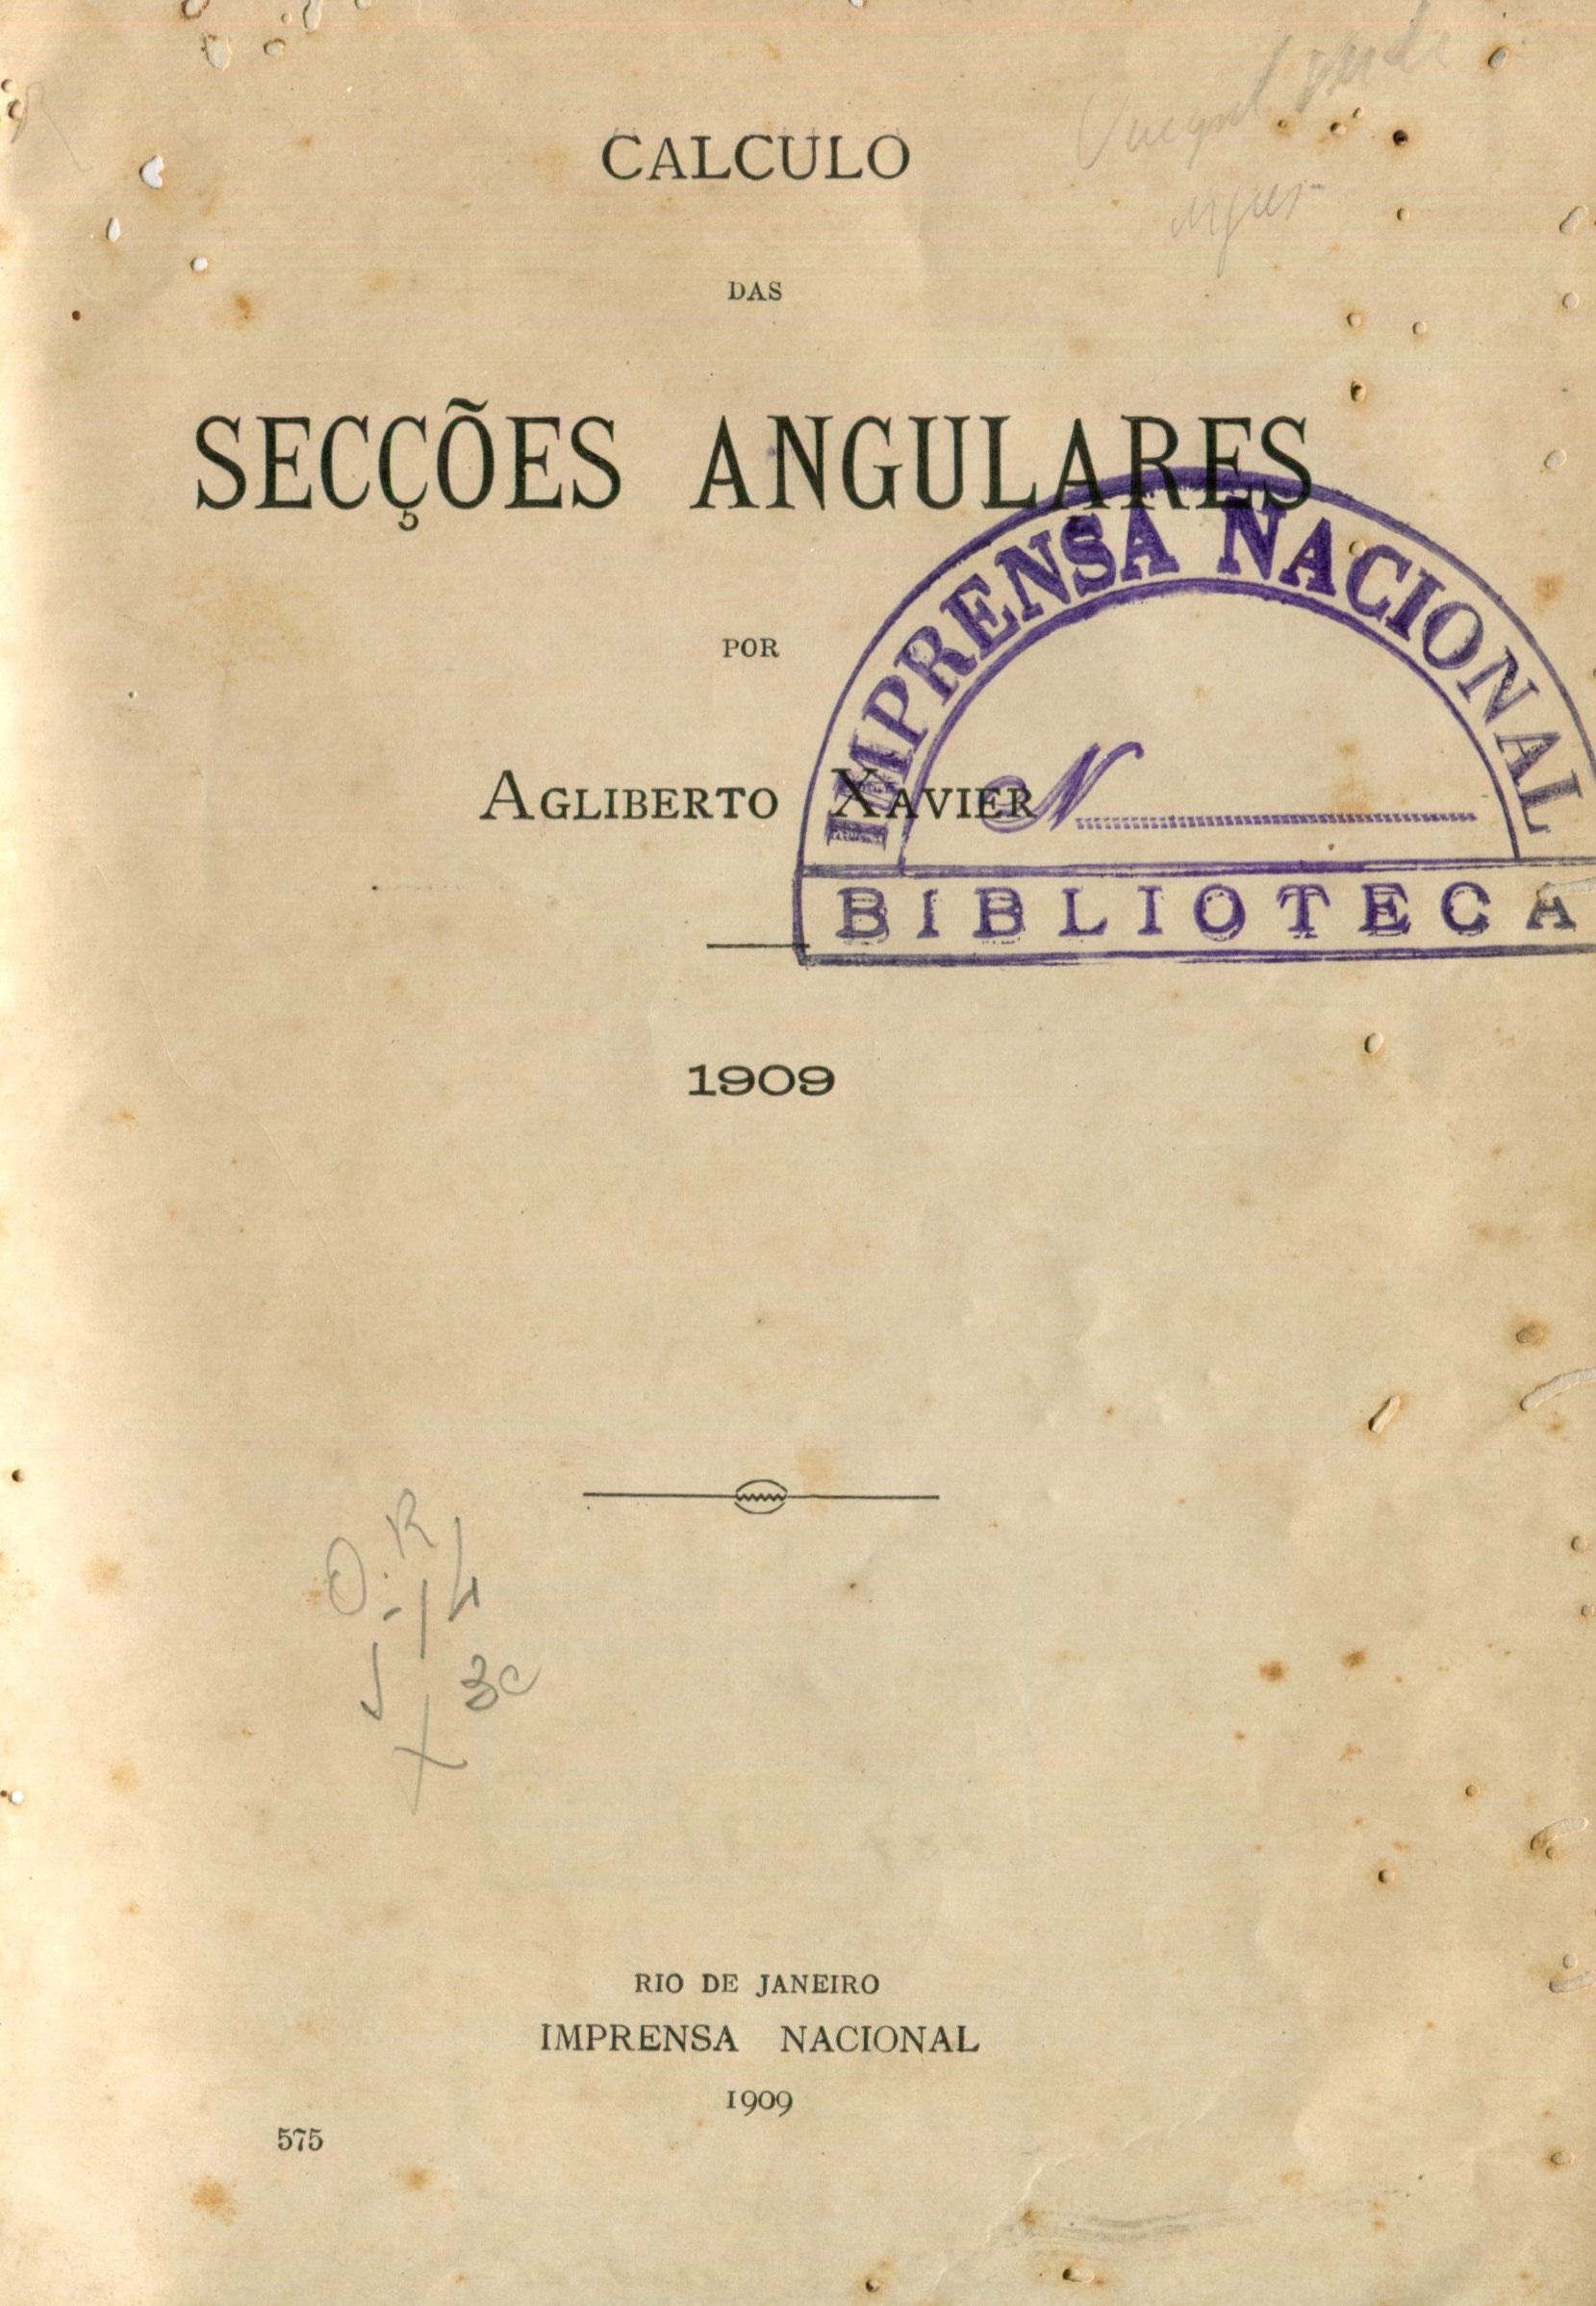 Capa do Livro Calculo das Secções Angulares